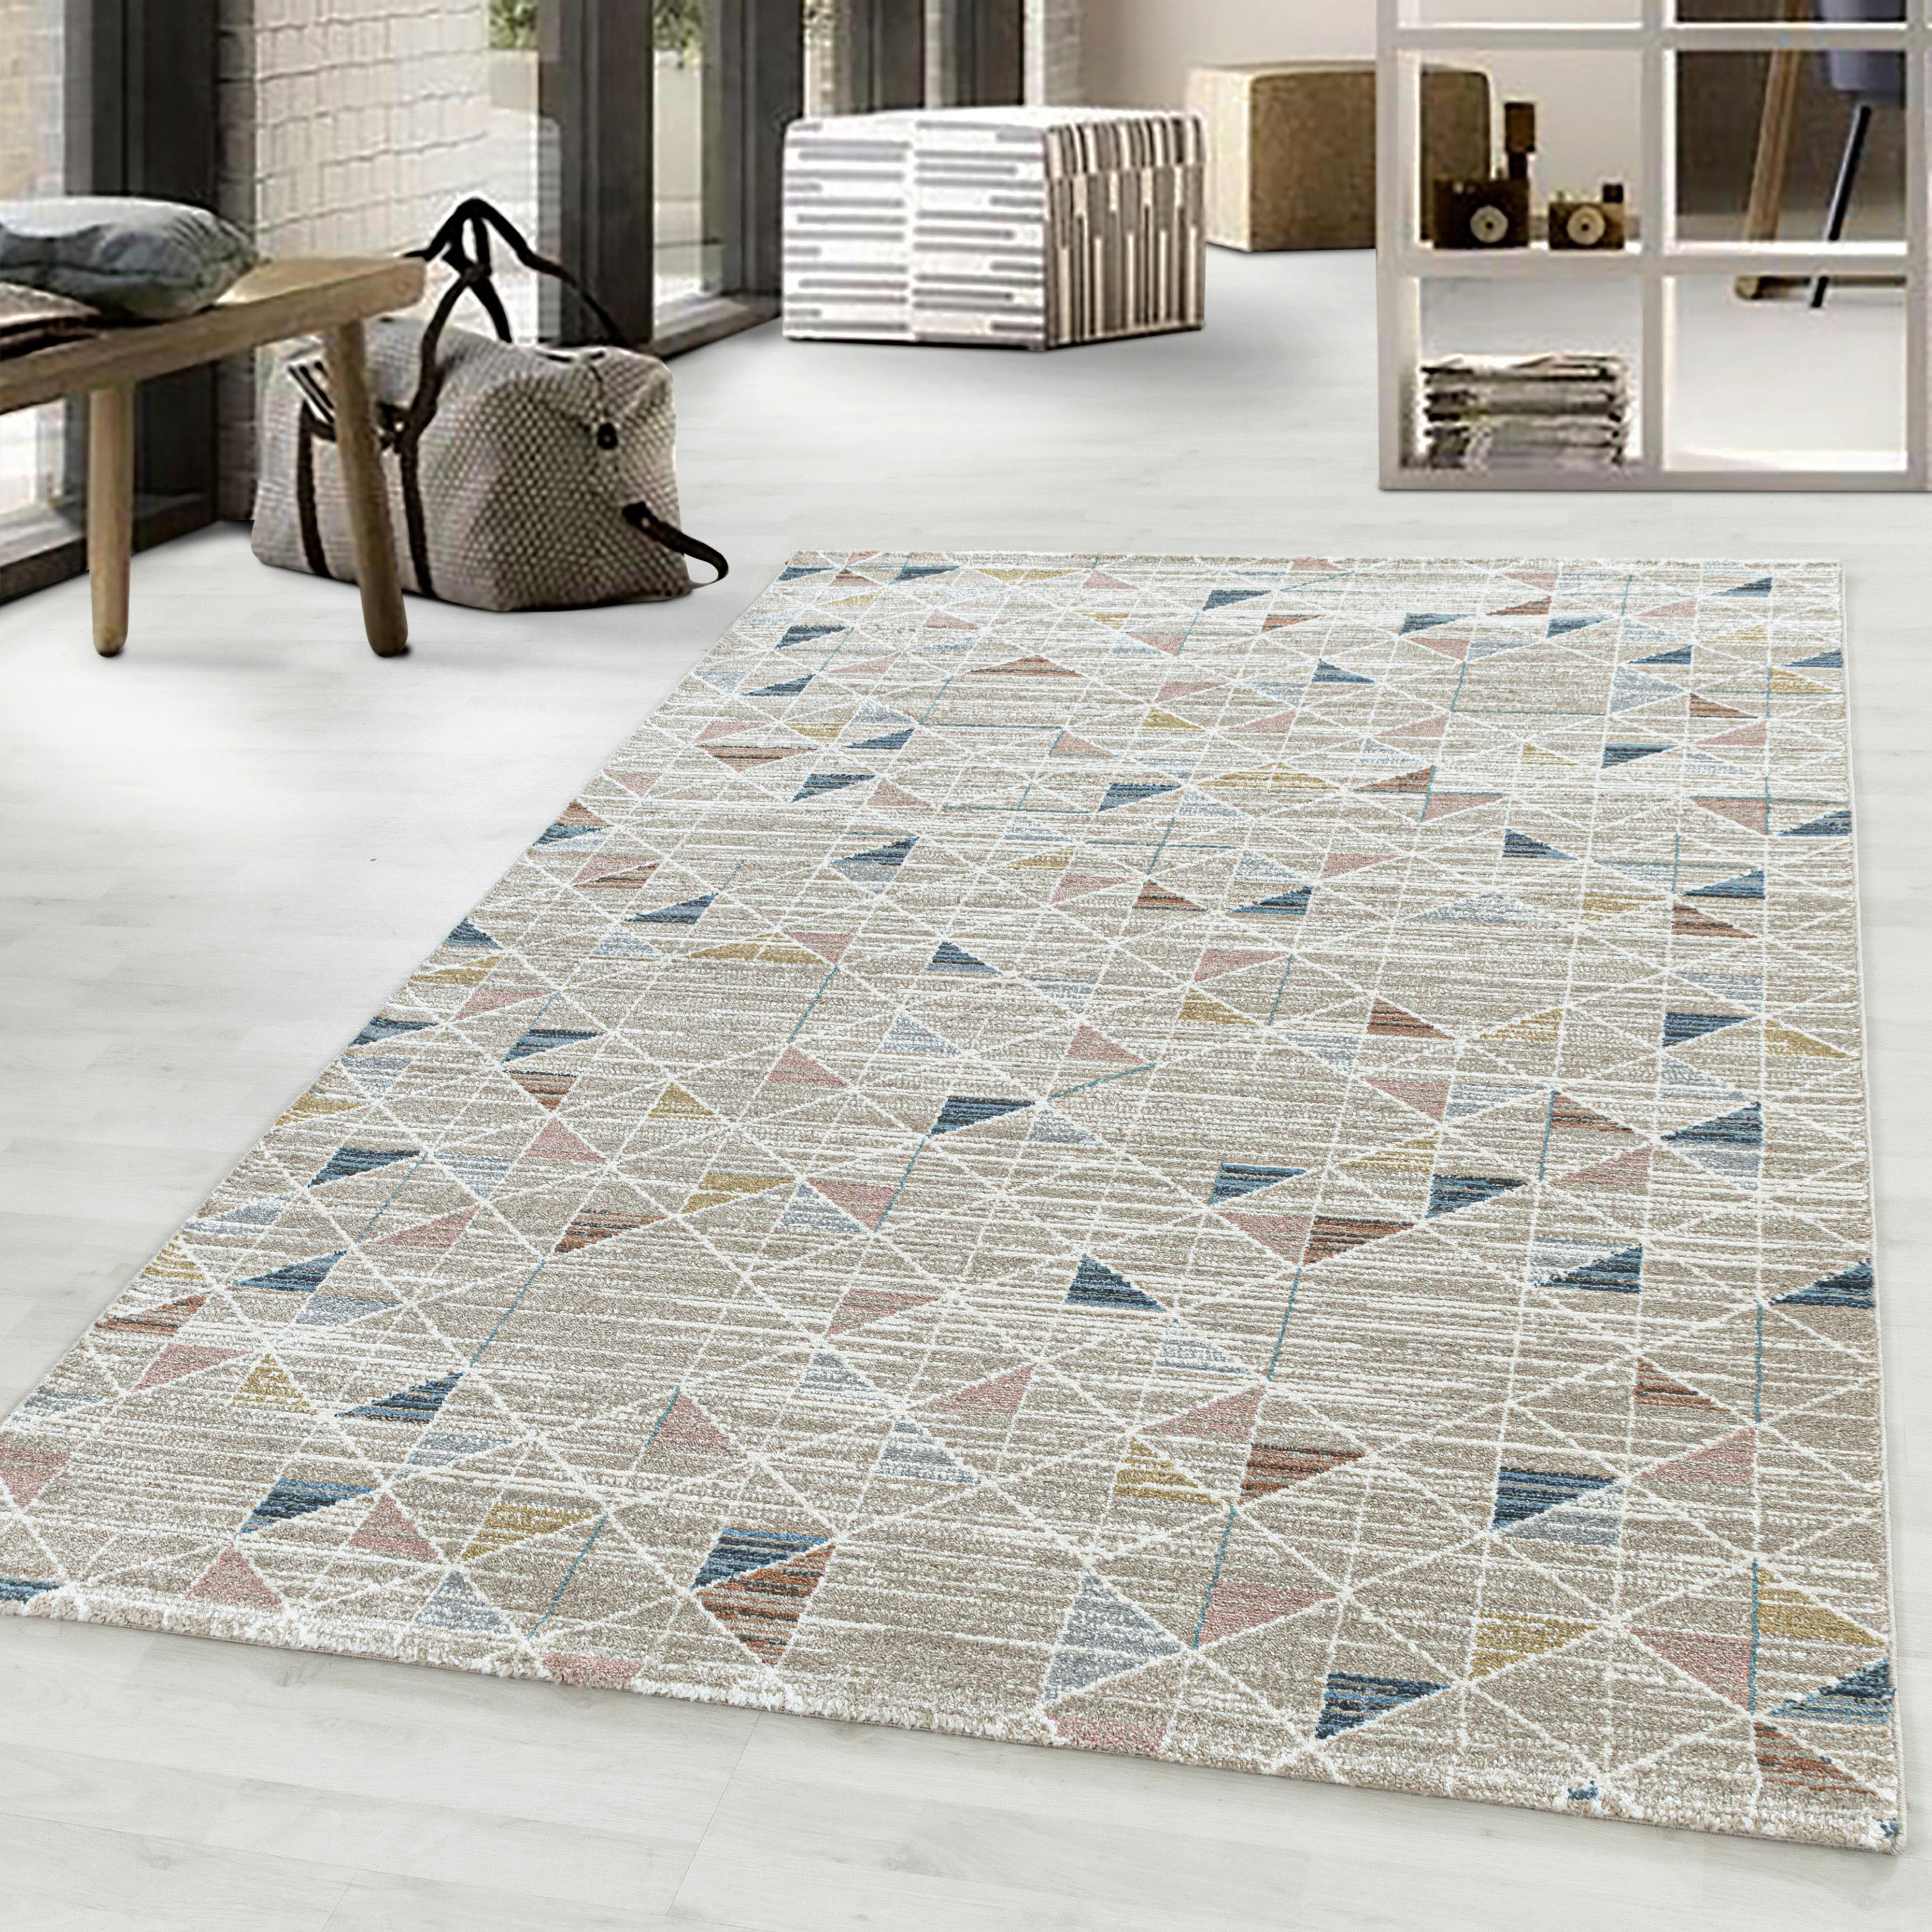 Teppich Läufer Multicolor Meliert Royal 80x250 cm - Multicolor, Design, Textil (80/250cm)